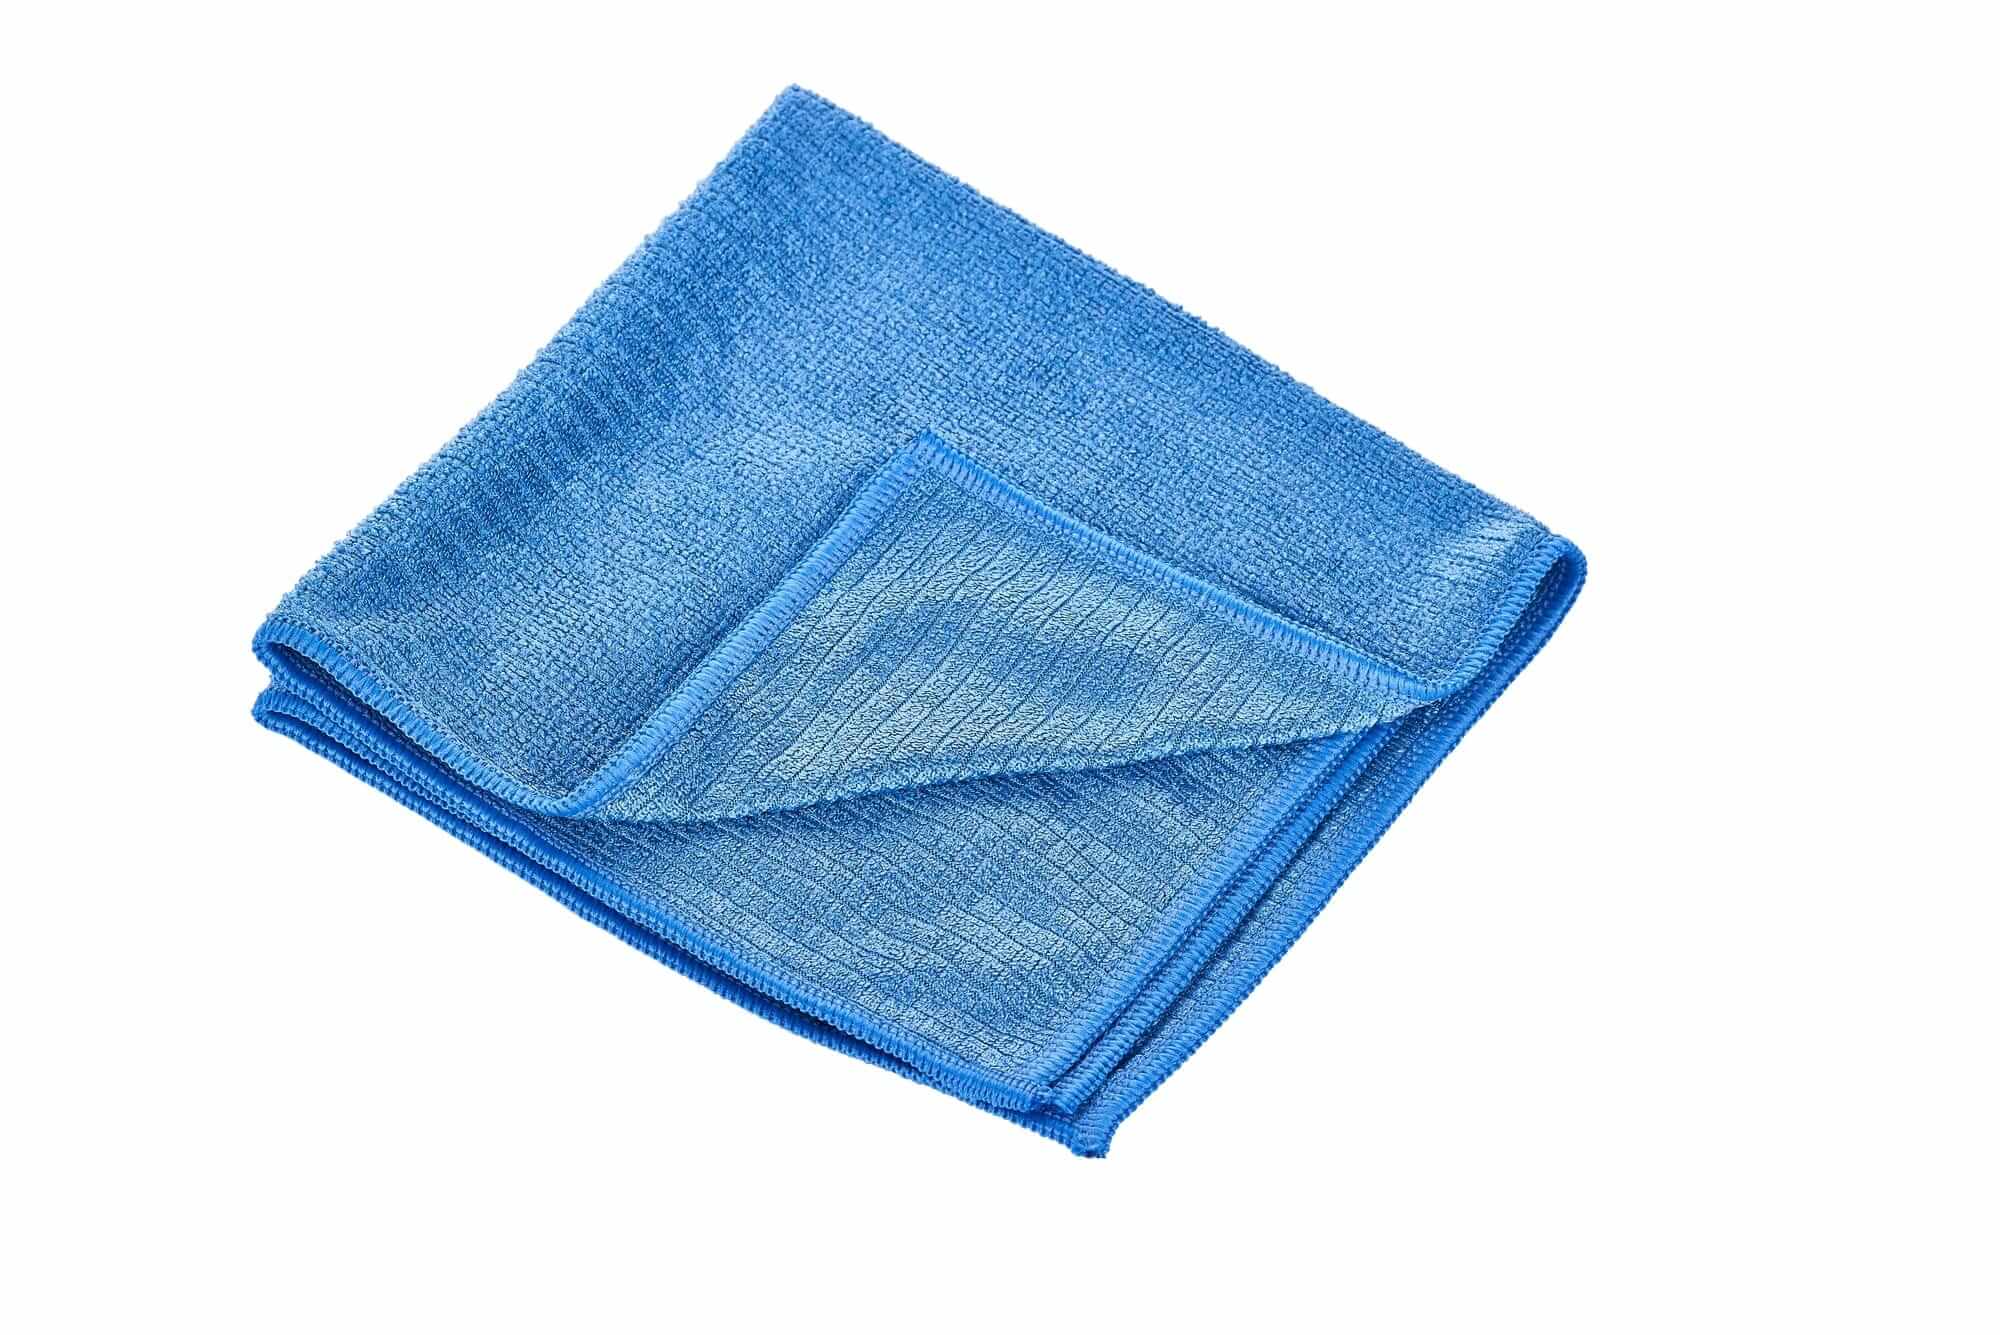 Soft microfibre cloth - blue